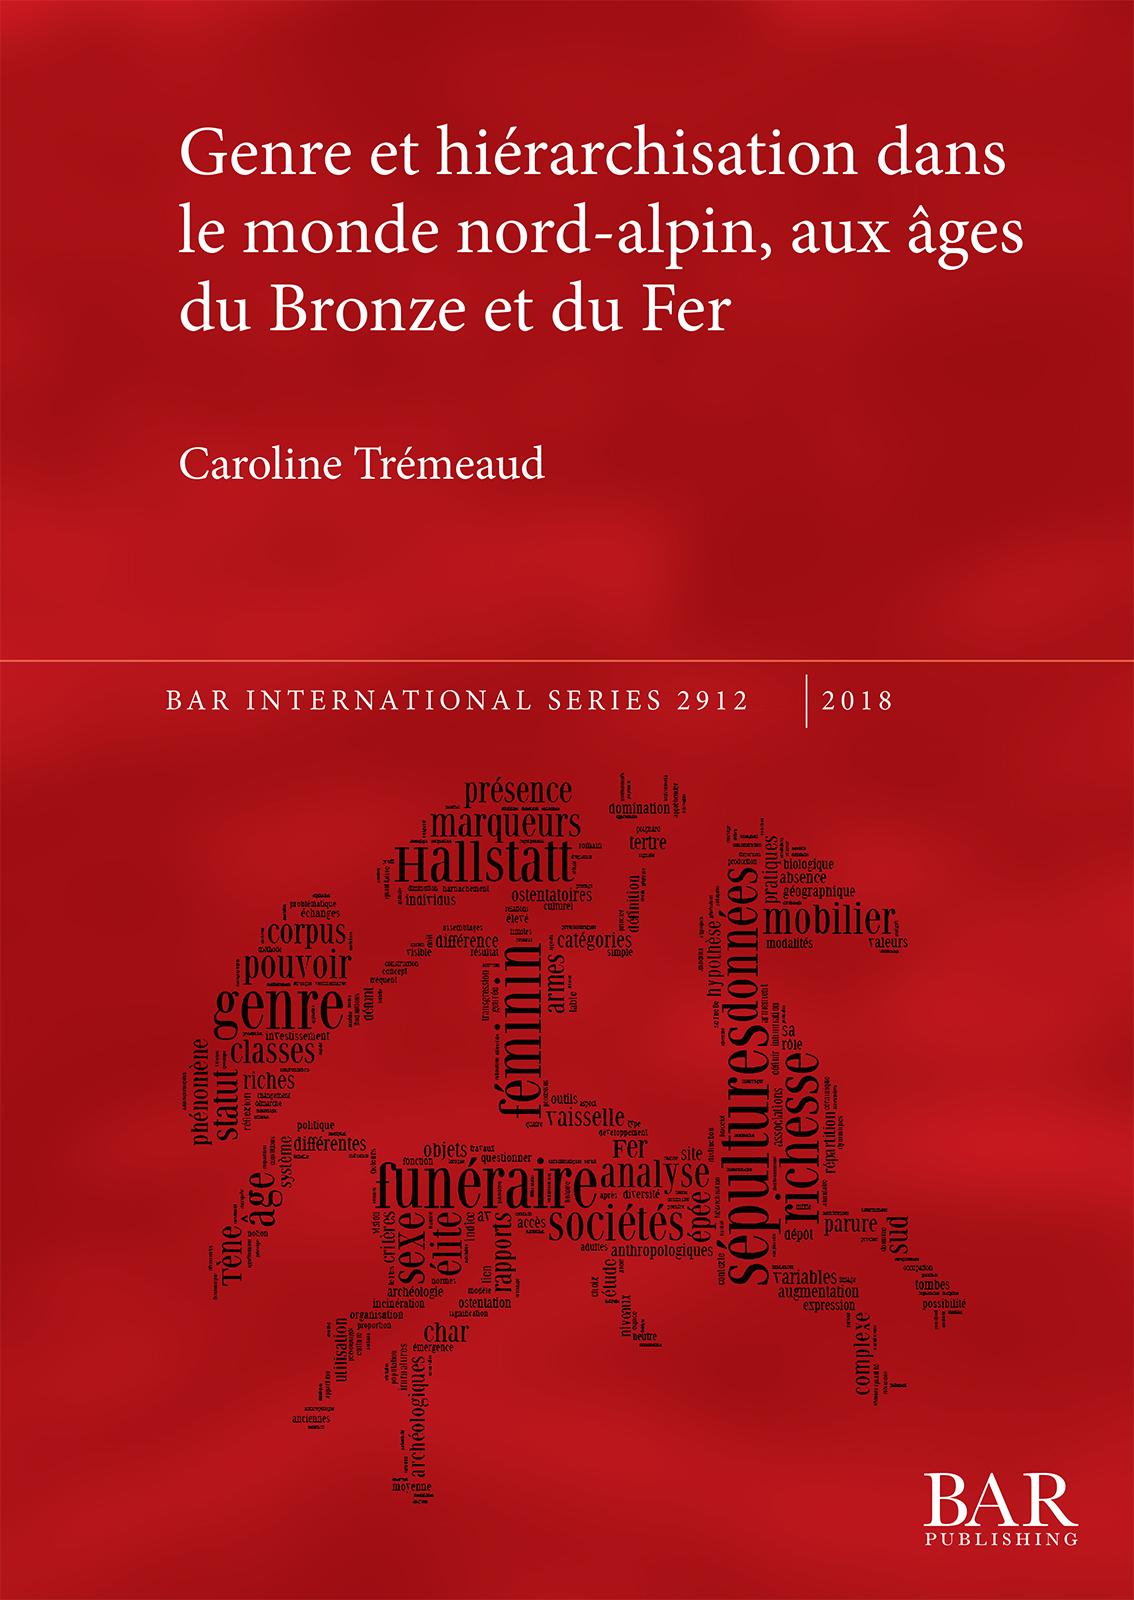 Genre et hiérarchisation dans le monde nord-alpin, aux âges du Bronze et du Fer, (BAR S2912), 2018, 251 p.